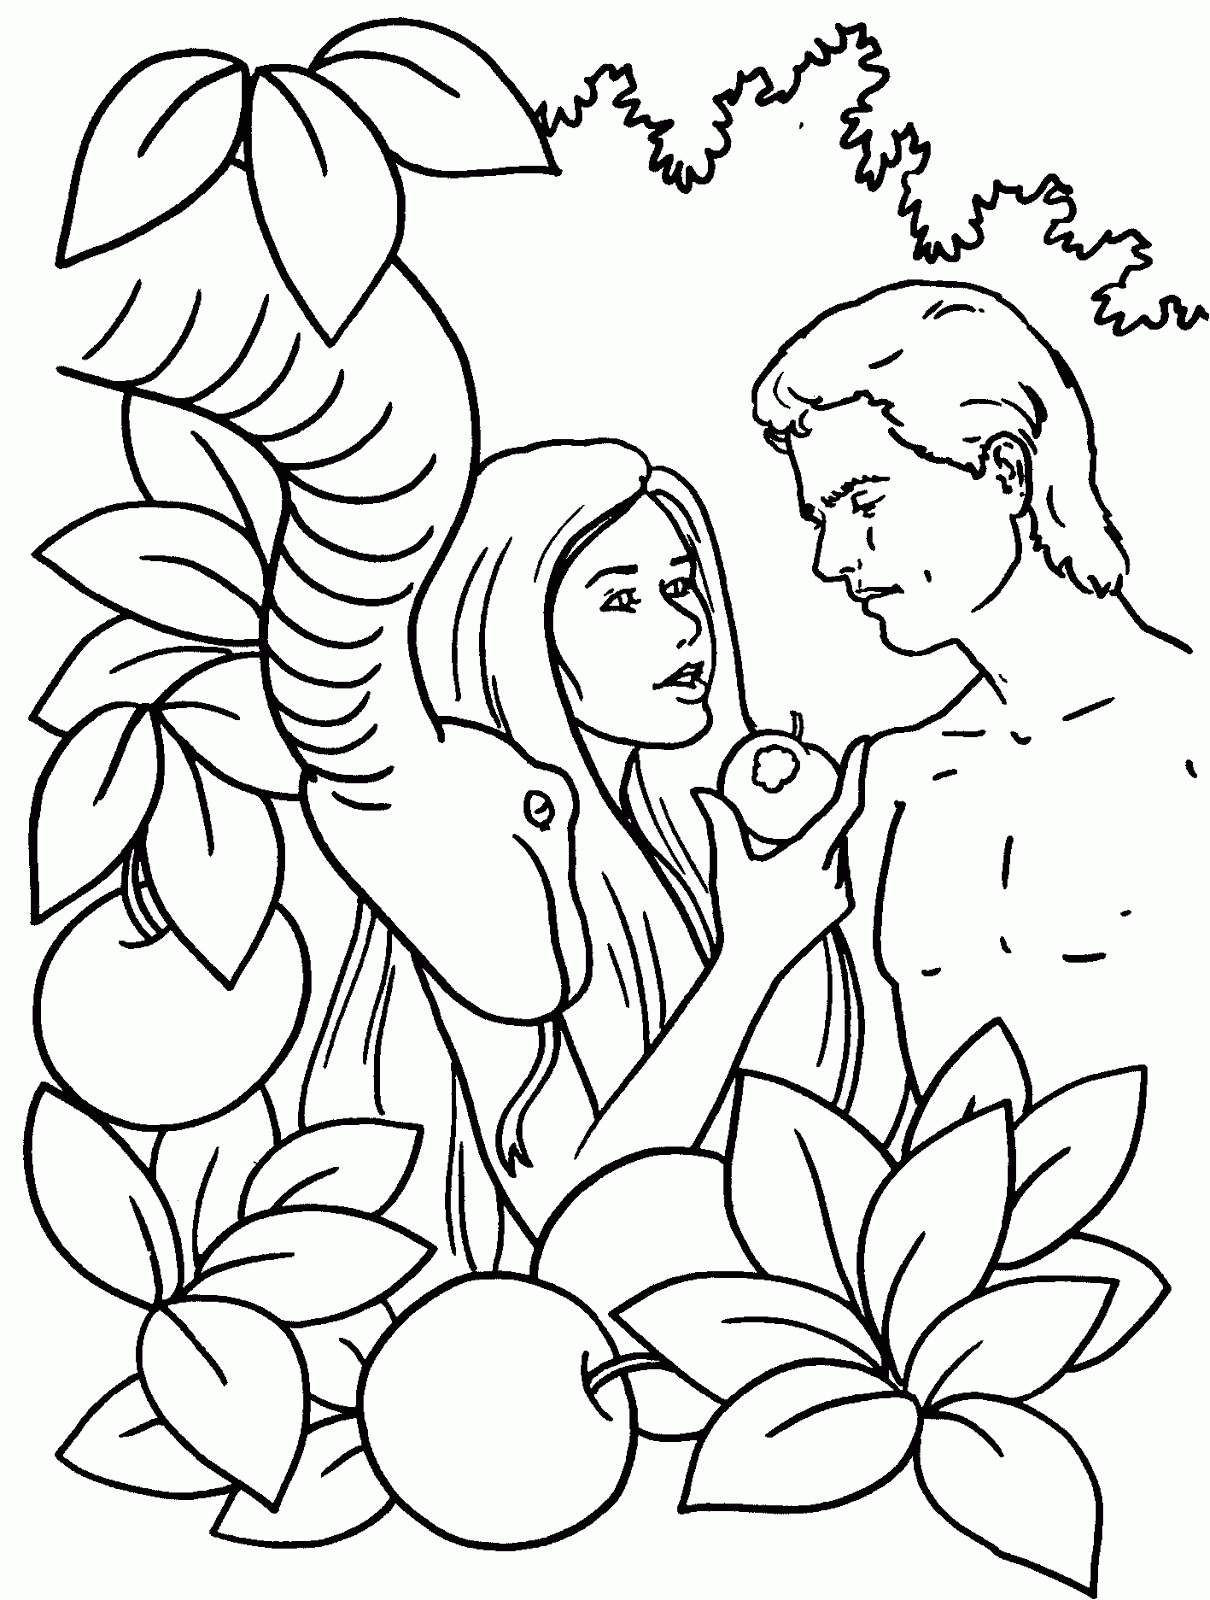 Dibujo del Pecado de Adán y Eva para colorear ~ Dibujos para ...